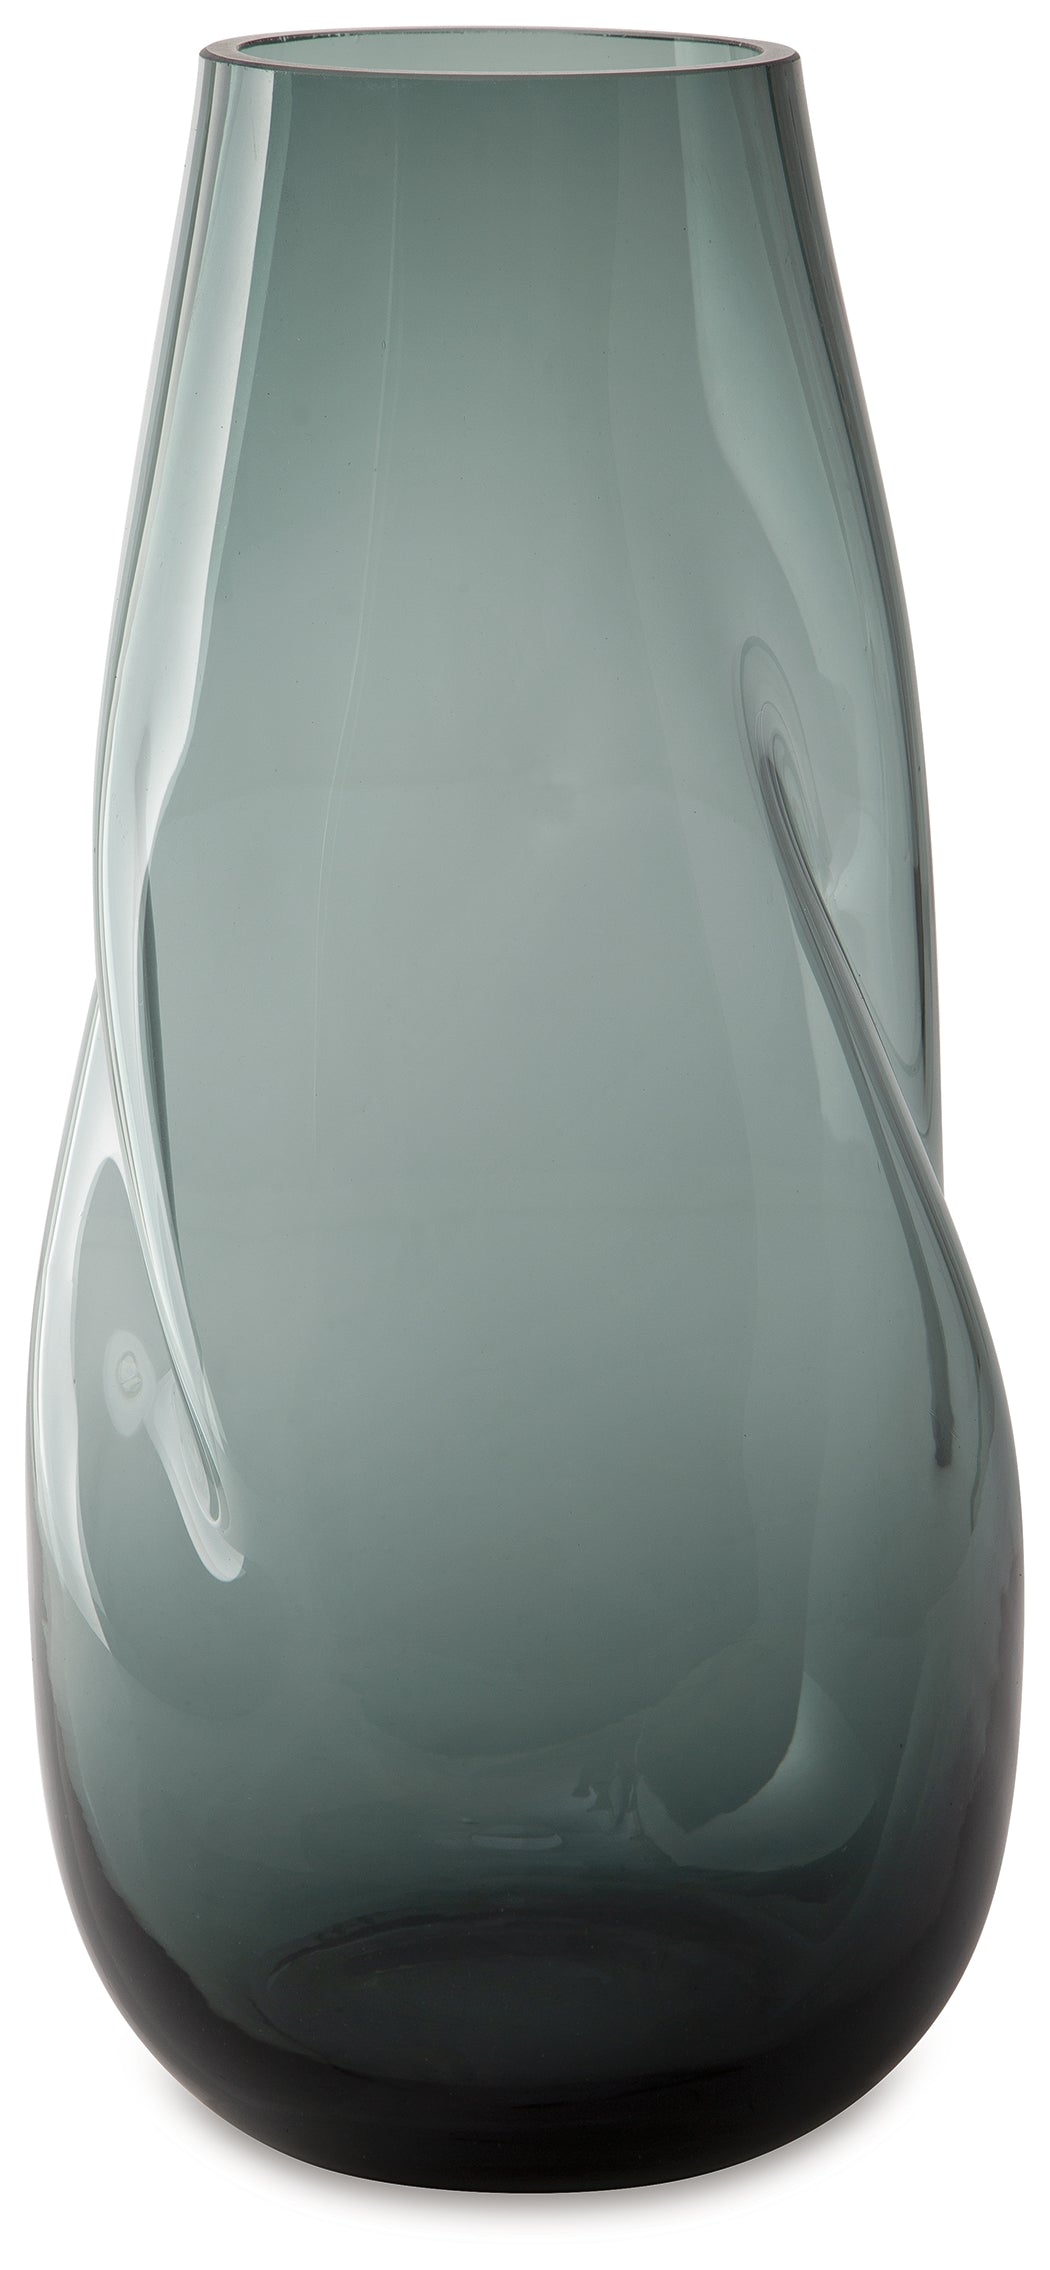 Beamund Teal Blue Vase (Set of 2) - A2900011 - Bien Home Furniture &amp; Electronics